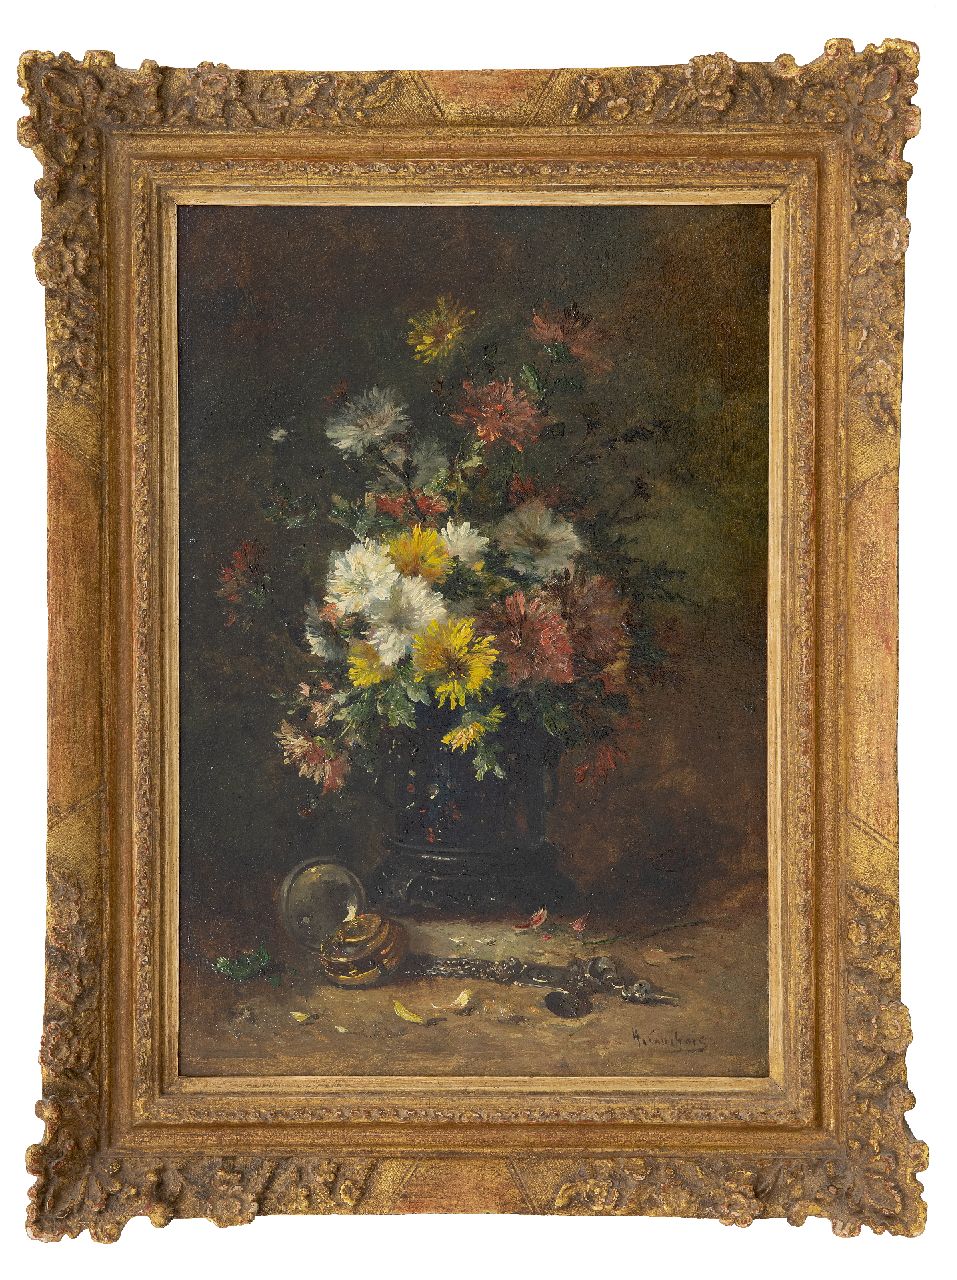 Cauchois E.H.  | Eugène-Henri Cauchois | Schilderijen te koop aangeboden | Stilleven met asters, olieverf op paneel 46,2 x 31,3 cm, gesigneerd rechtsonder